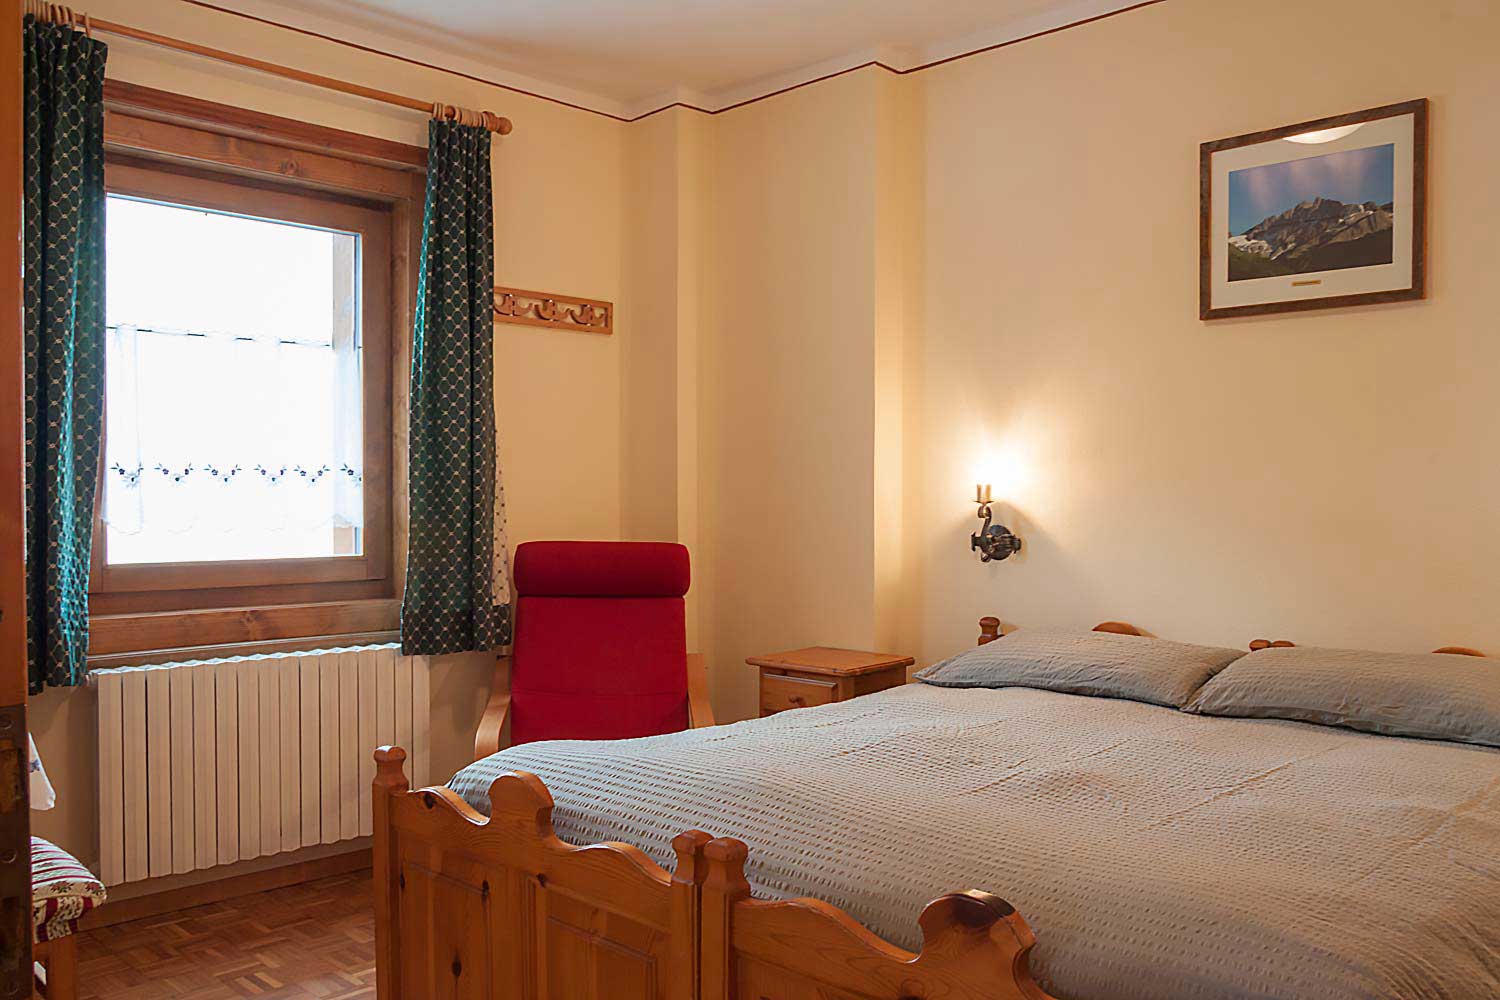 Appartamento 2 | Li Pont | Prenota il tuo appartamento in affitto a Livigno